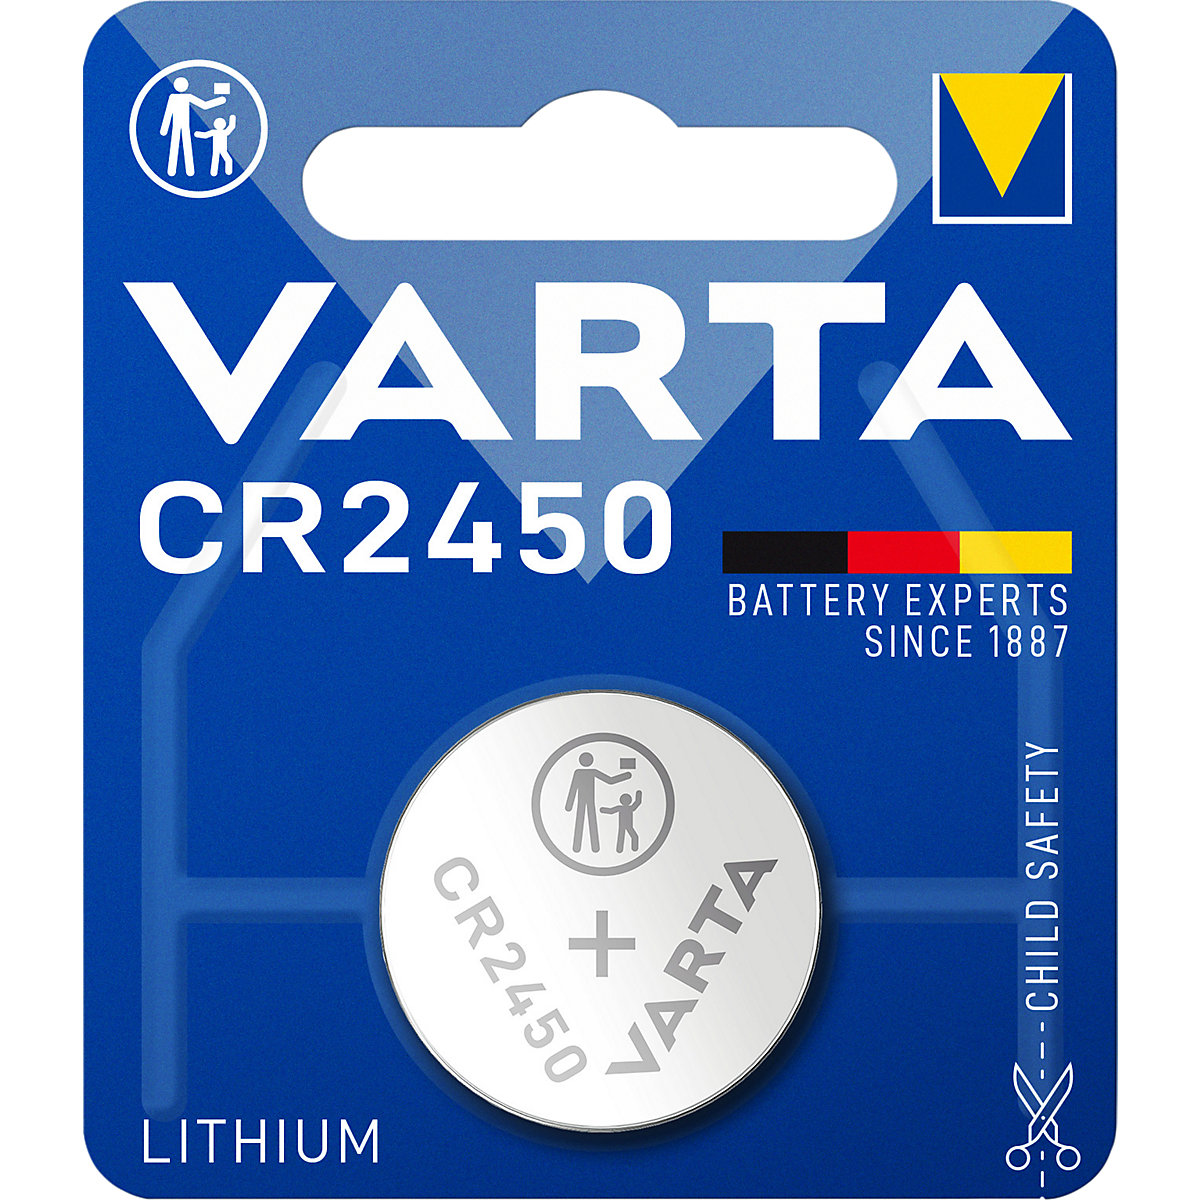 Gumbasta baterija LITHIUM – VARTA